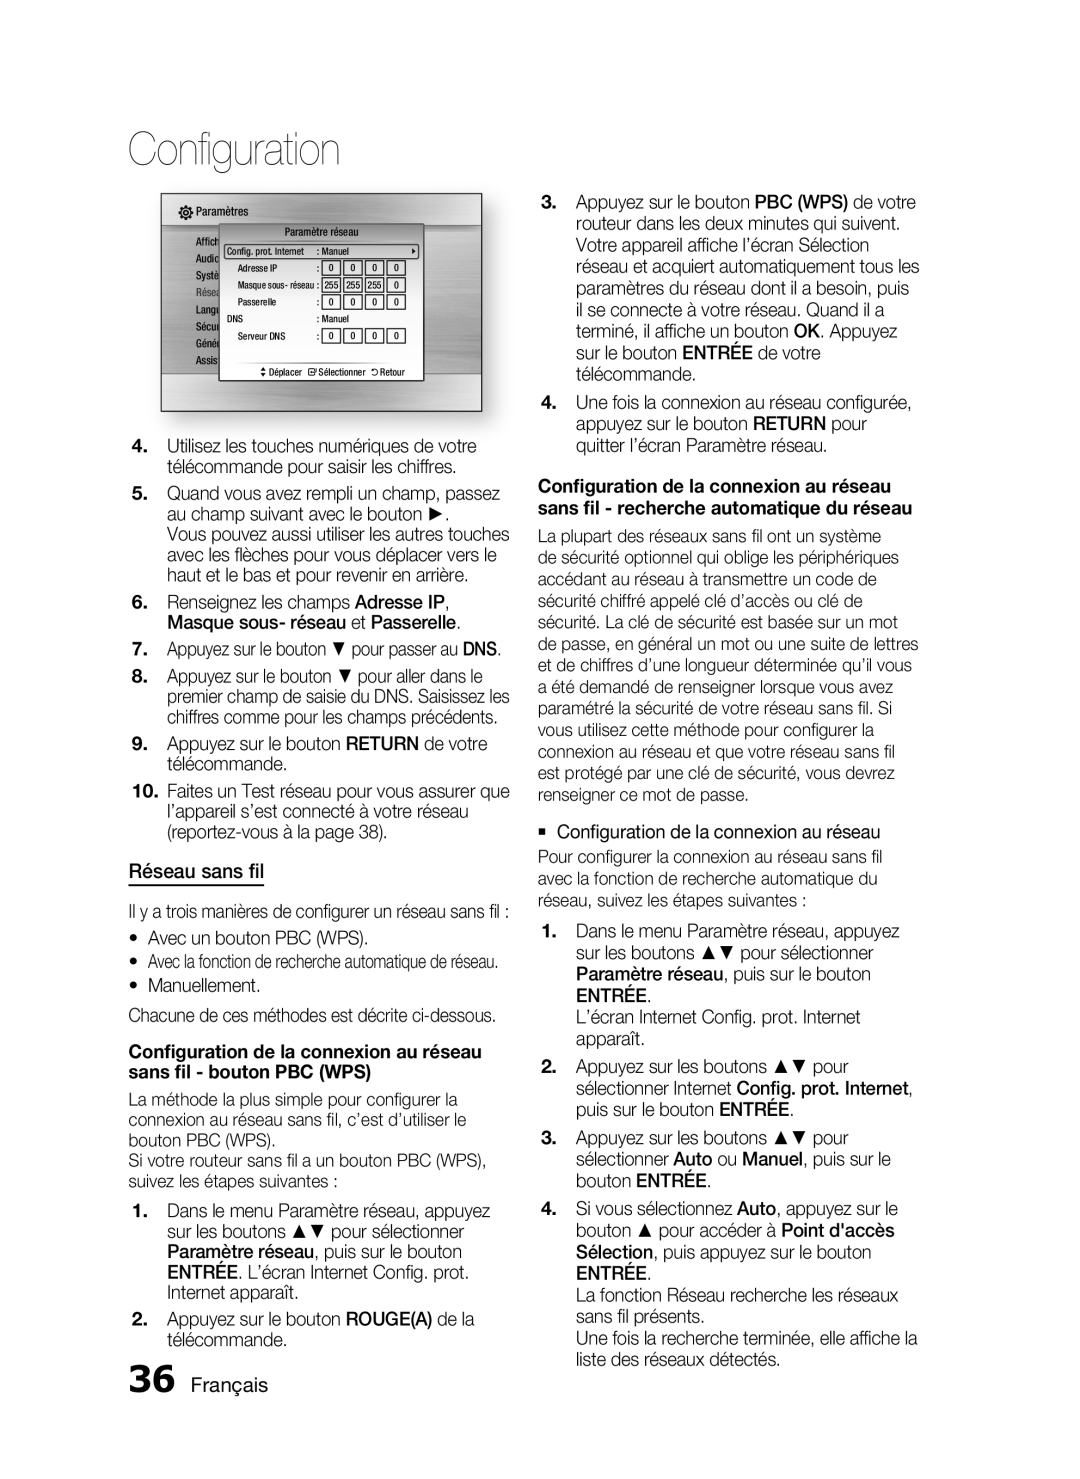 Samsung HT-C6200/XEF manual Réseau sans ﬁl, Français, Conﬁguration de la connexion au réseau sans ﬁl - bouton PBC WPS 